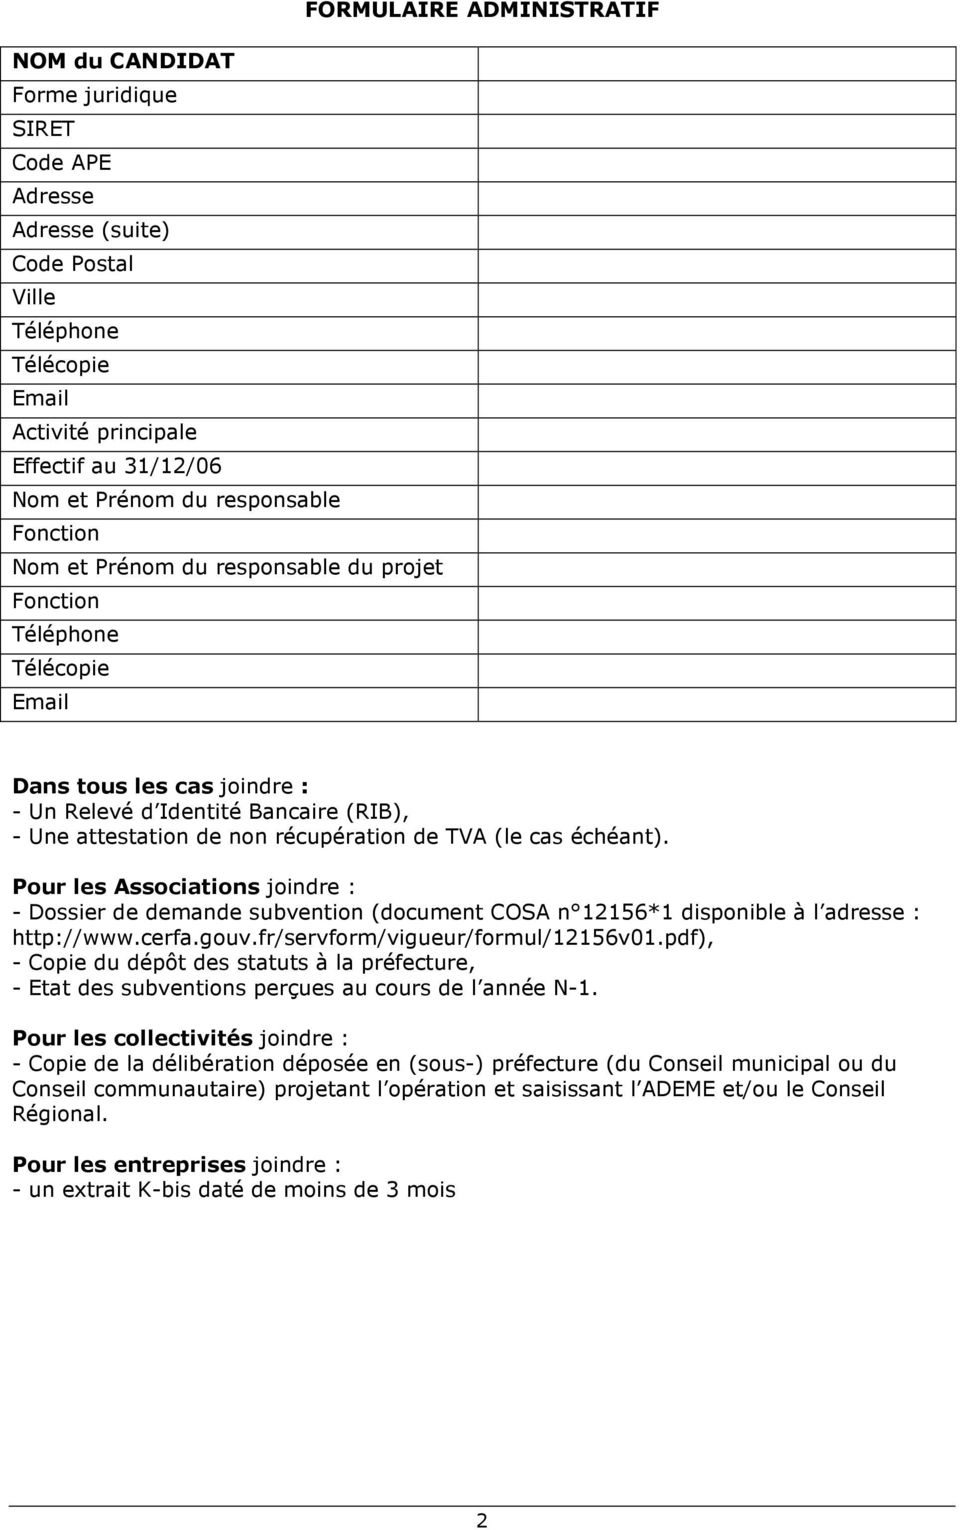 Pour les Associations joindre : - Dossier de demande subvention (document COSA n 12156*1 disponible à l adresse : http://www.cerfa.gouv.fr/servform/vigueur/formul/12156v01.